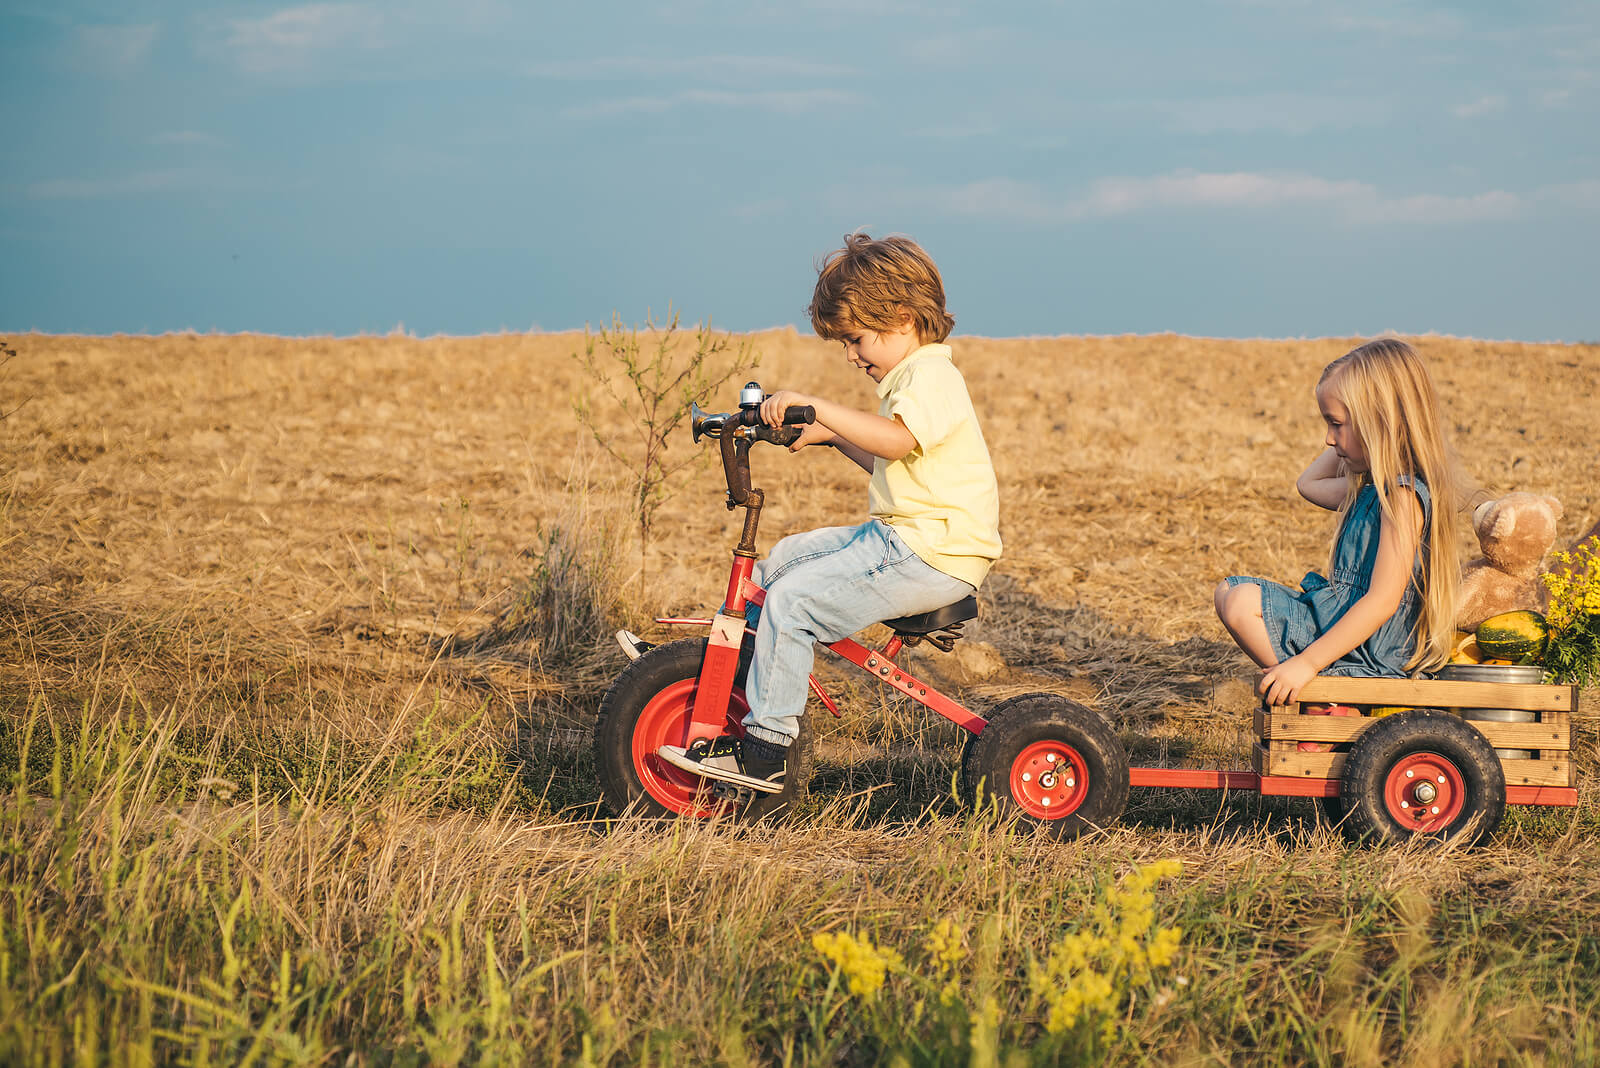 Amigos jugando por el campo con un triciclo a modo de tractor con remolque.